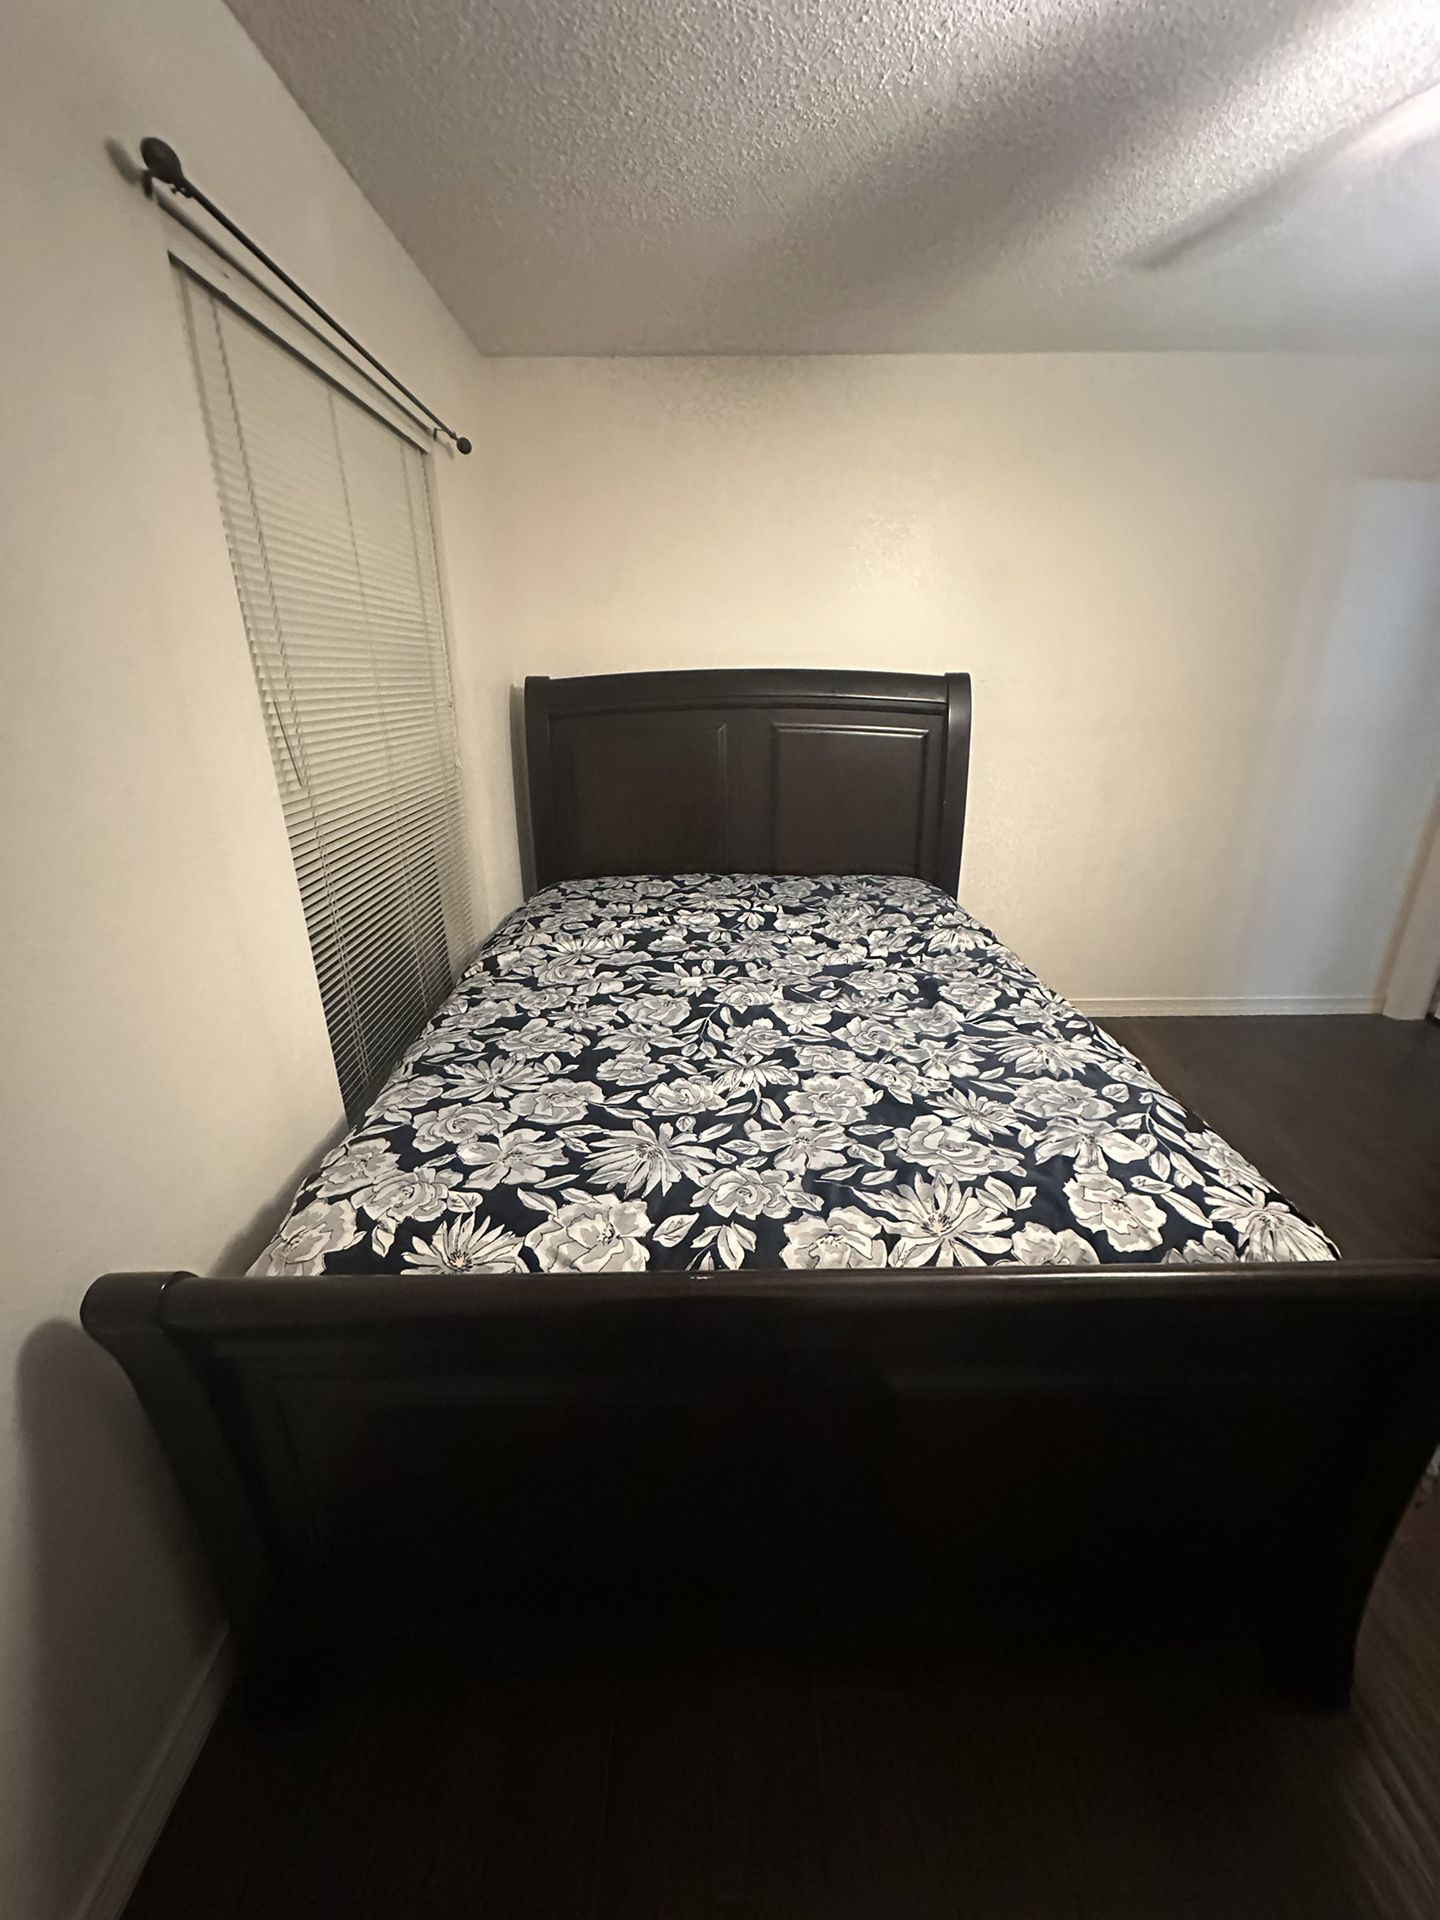 Queen Bed frame (Optional matching Dresser)